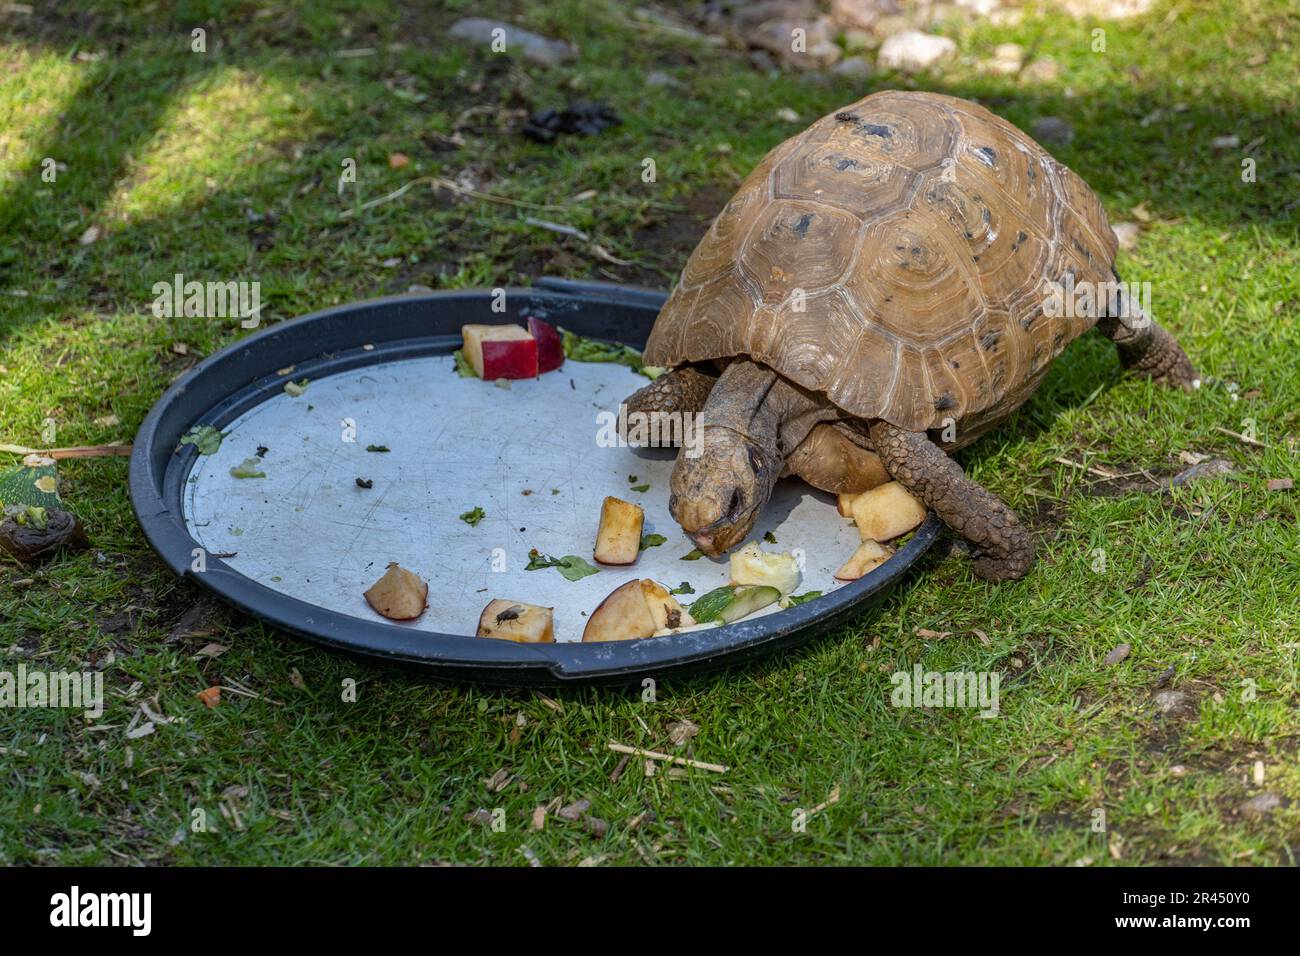 Una tartaruga adorabile a terra con la testa giù consumando cibo da un piatto Foto Stock